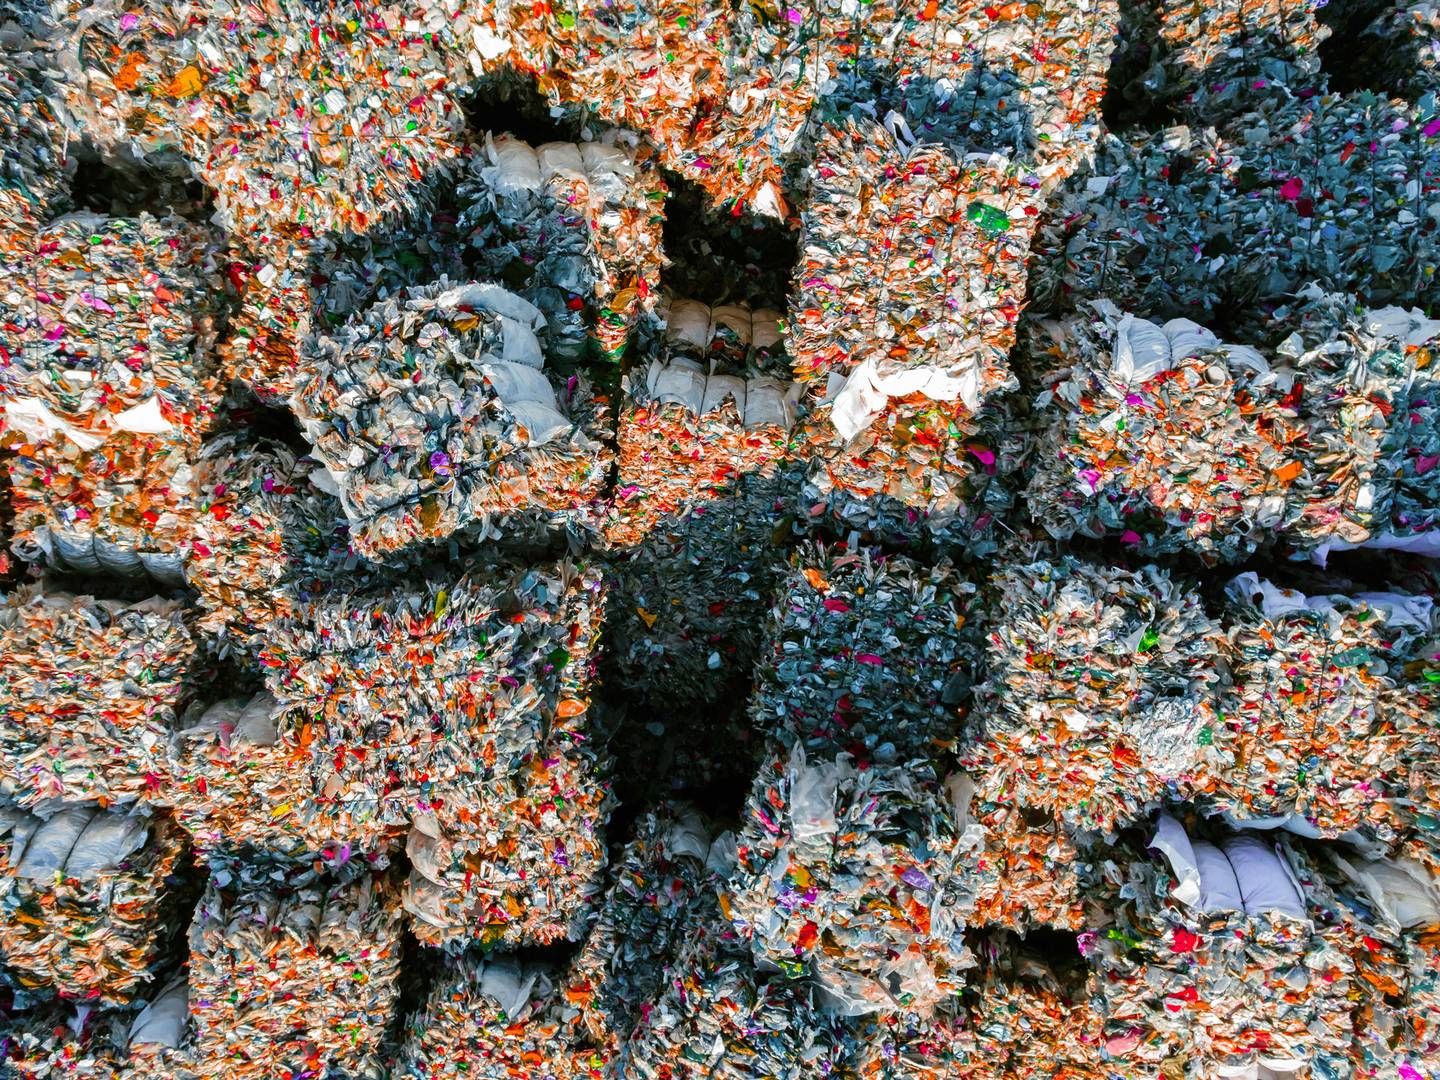 Når danske virksomheder bruger “genbrug” i flæng, er det i bedste fald en fejl og udtryk for uklar kommunikation, mener Silvie Østebø. | Foto: Getty Images